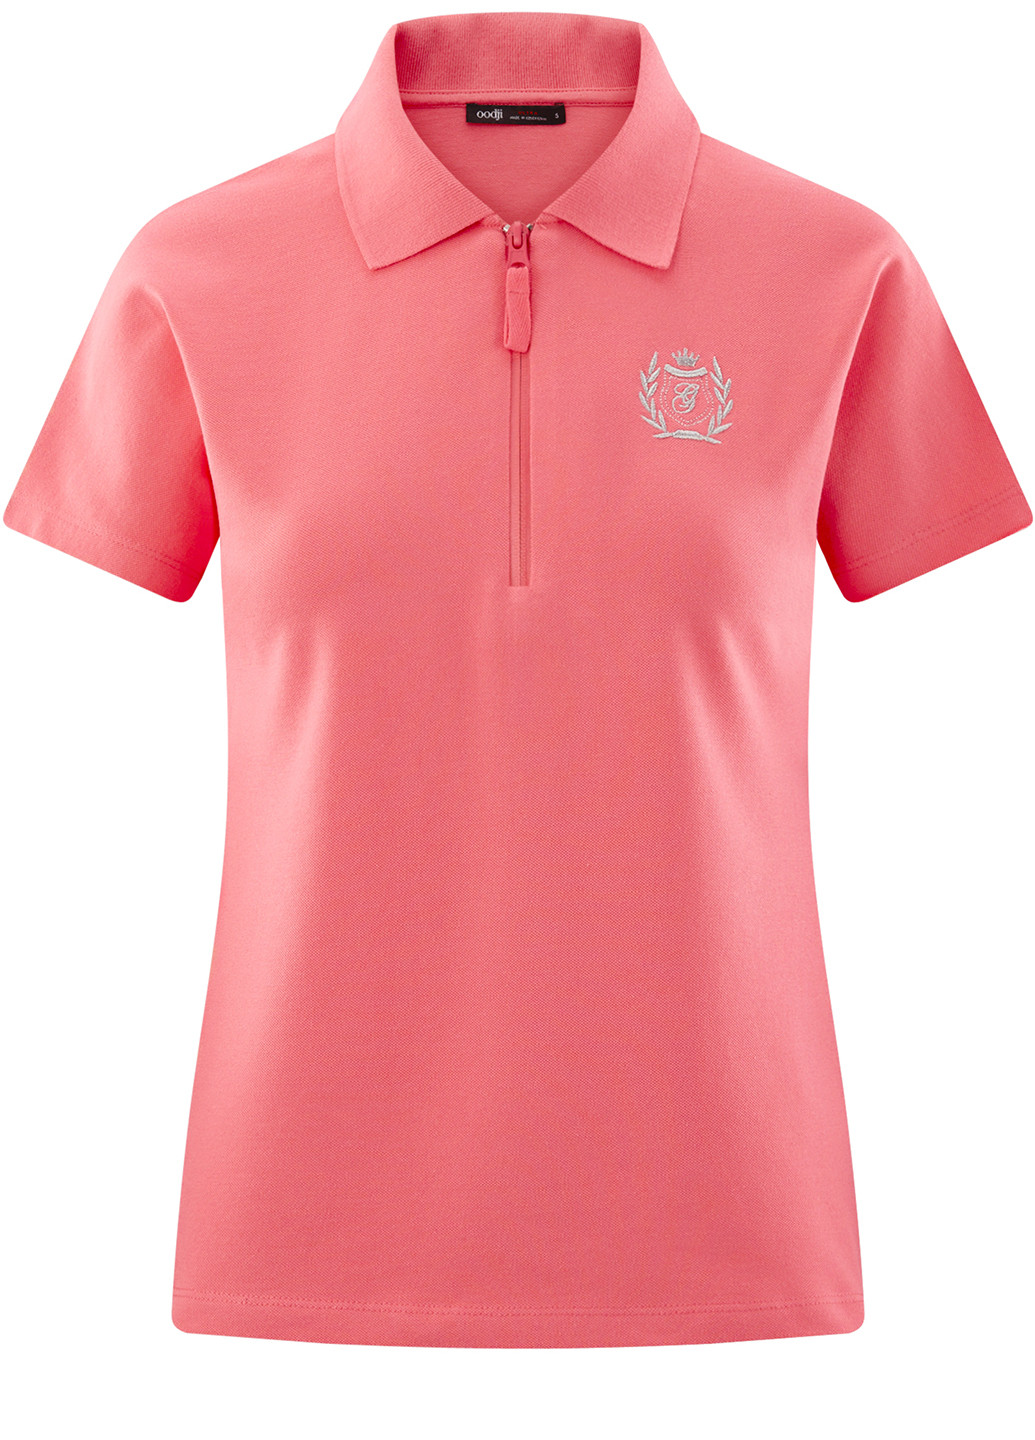 Розовая женская футболка-поло Oodji с логотипом